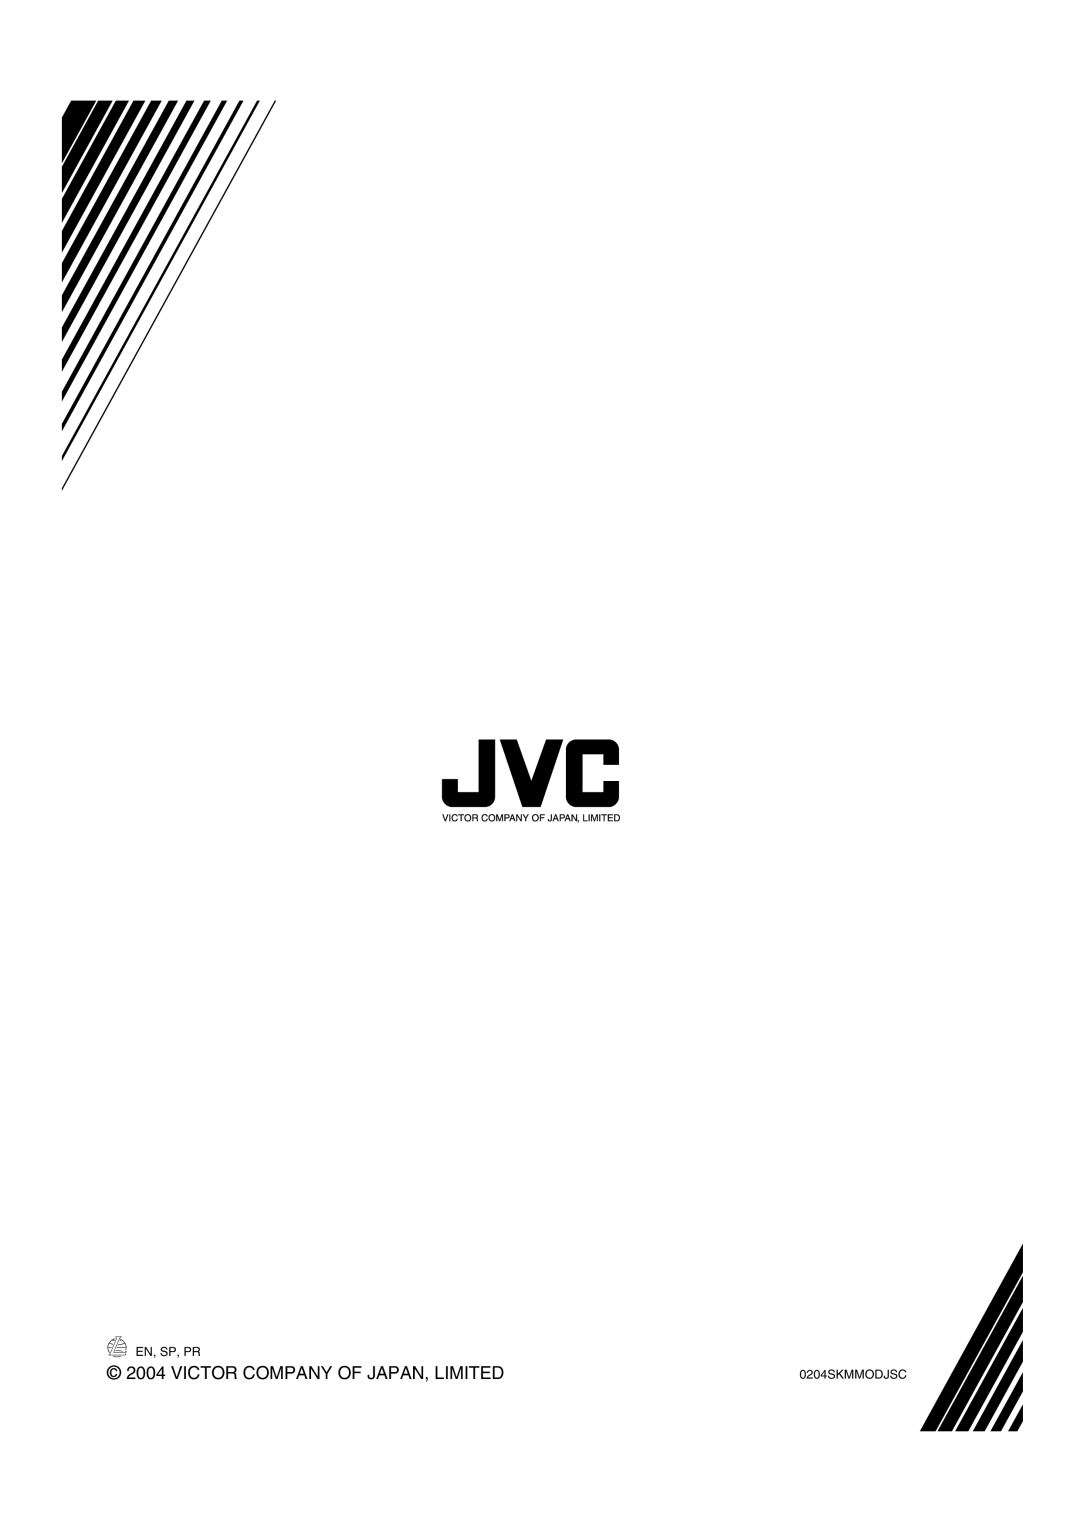 JVC EX-A1 manual c 2004 VICTOR COMPANY OF JAPAN, LIMITED, En, Sp, Pr, 0204SKMMODJSC 